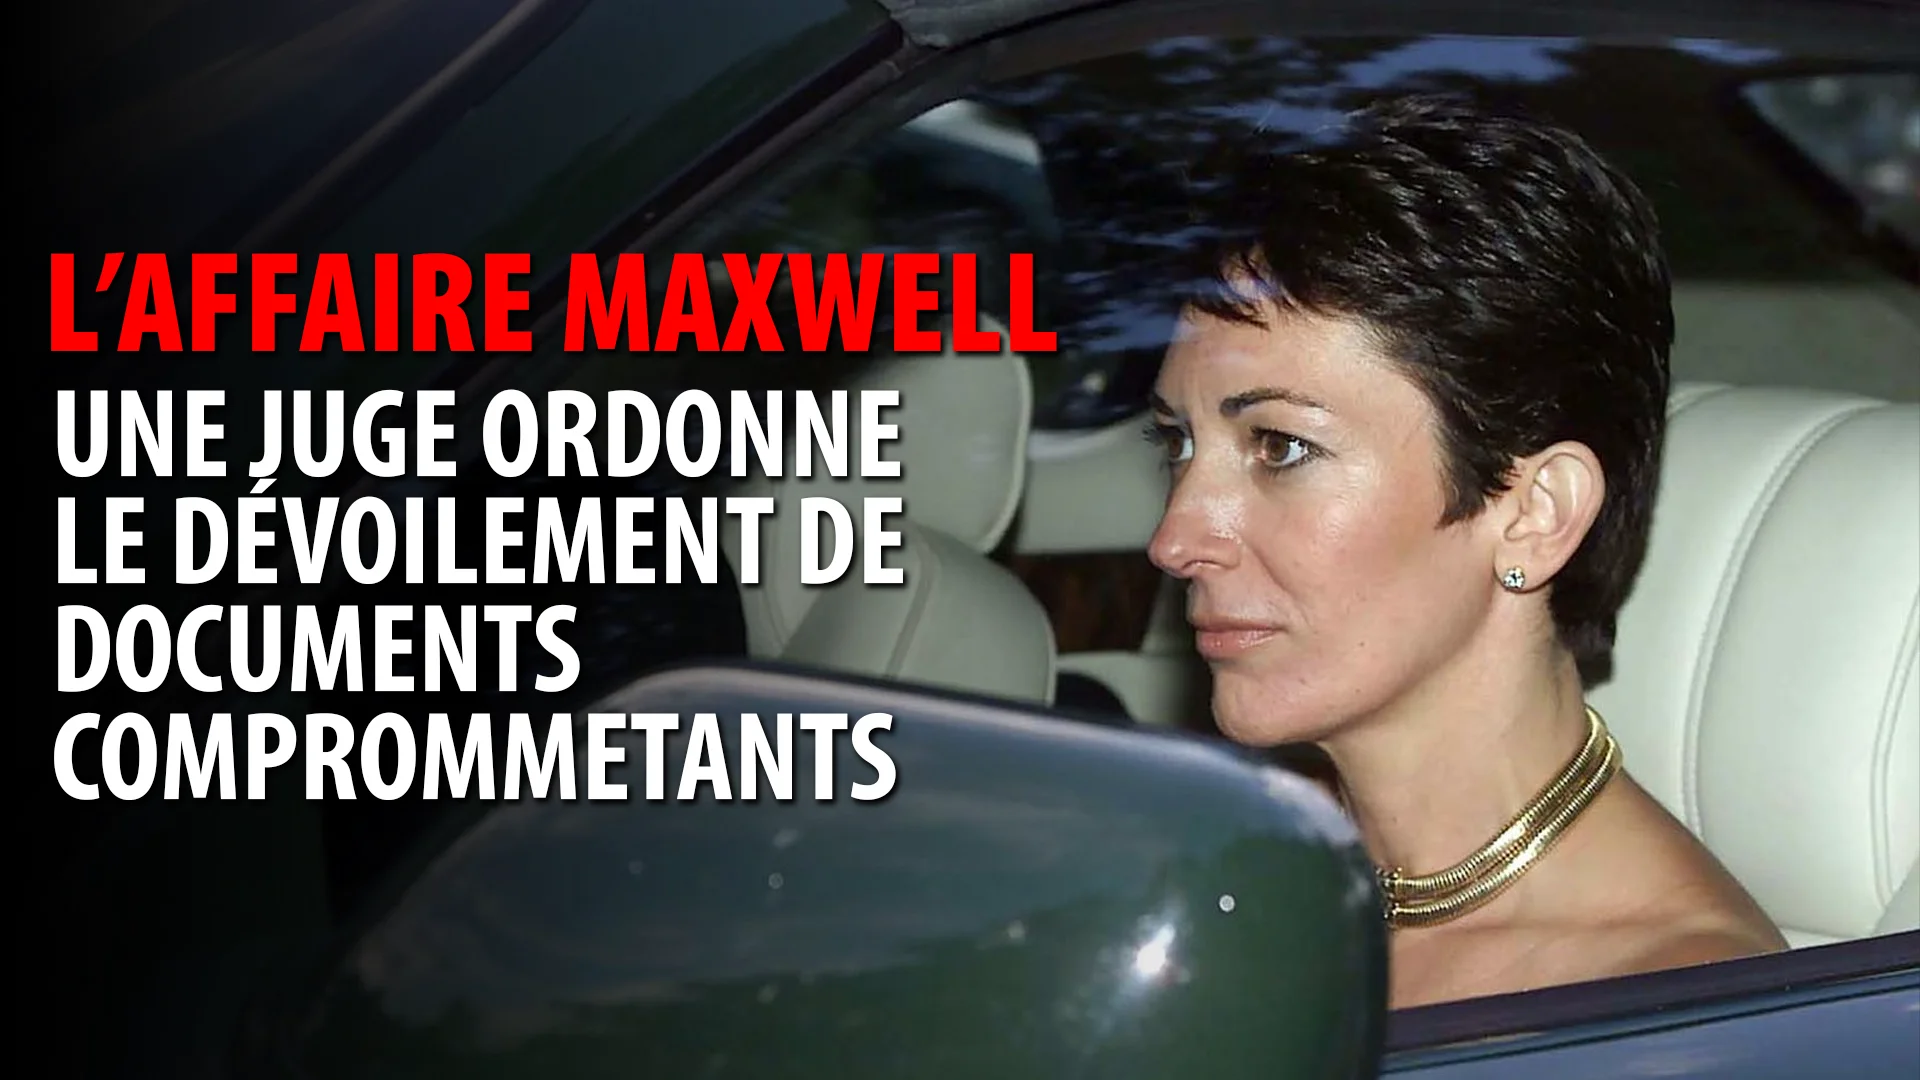 GHISLAINE MAXWELL – DÉVOILEMENT DE DOCUMENTS COMPROMETTANTS